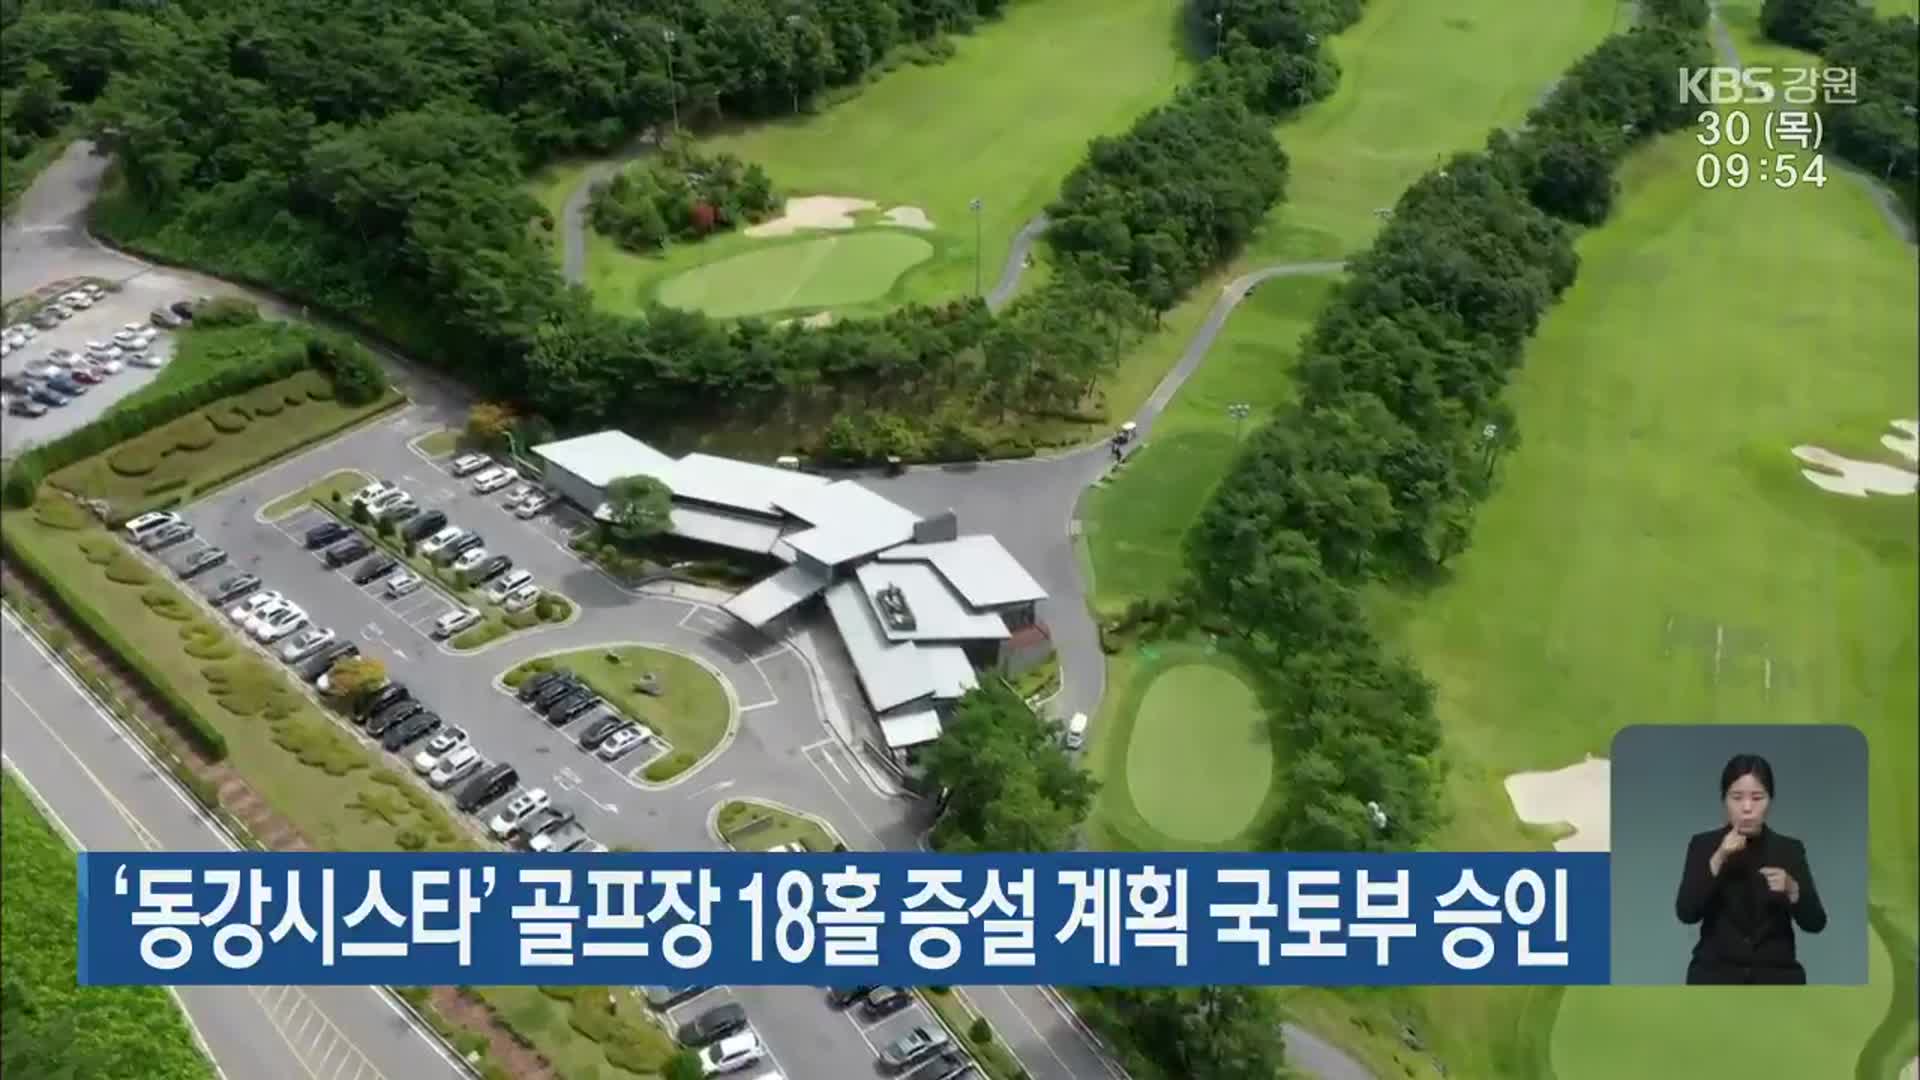 ‘동강시스타’ 골프장 18홀 증설 계획 국토부 승인